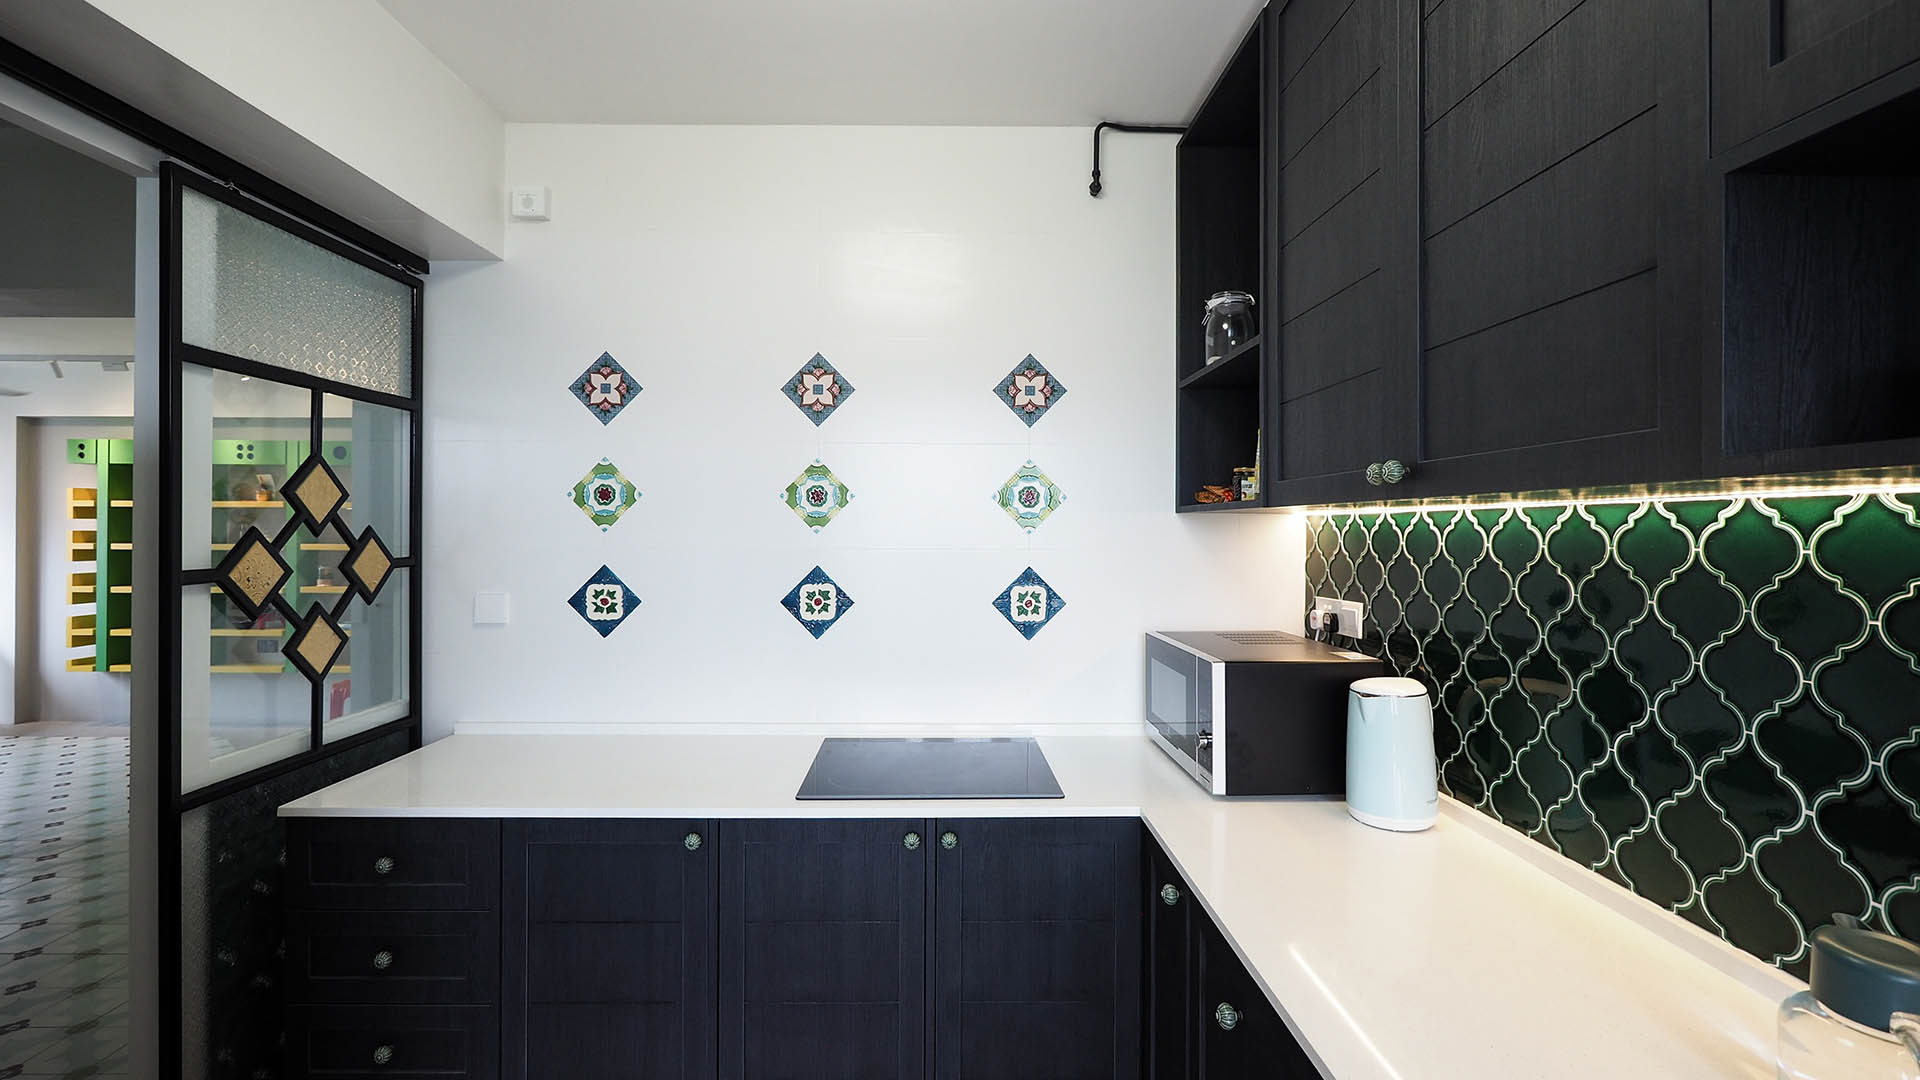 Peranakan kitchen tiles